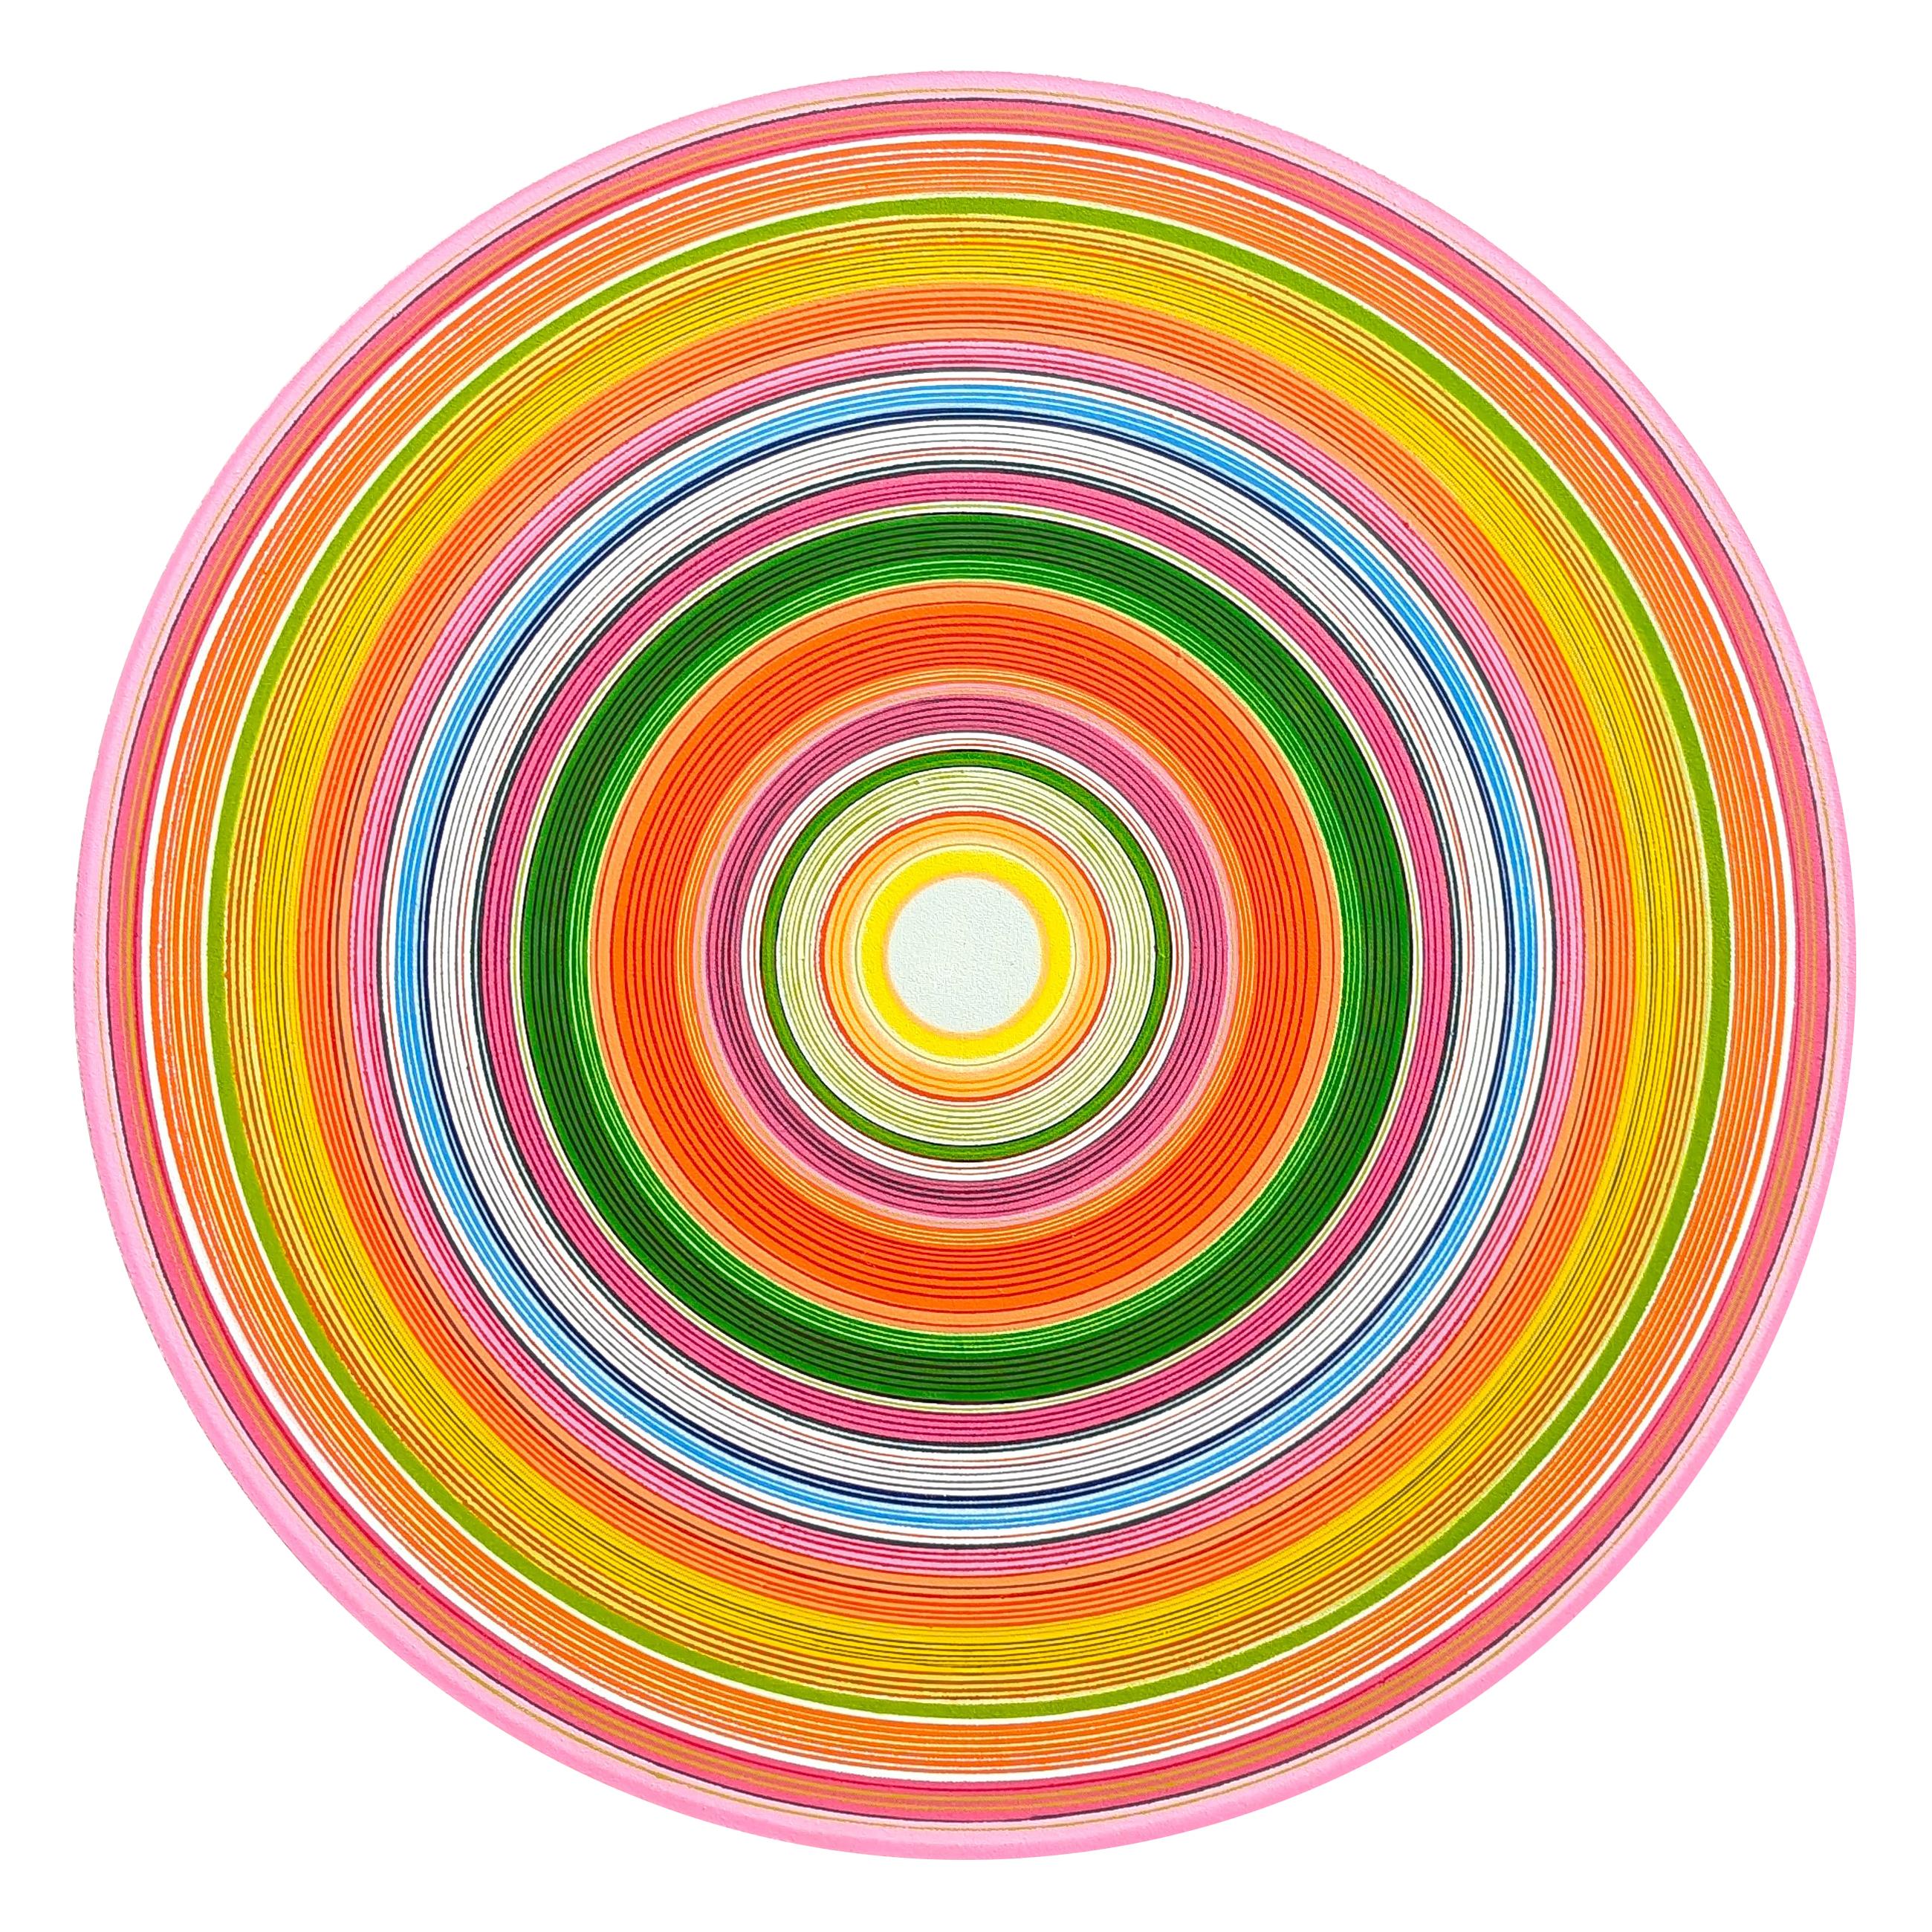 "Hot Patootle" Peinture abstraite contemporaine en forme de cercle concentrique coloré